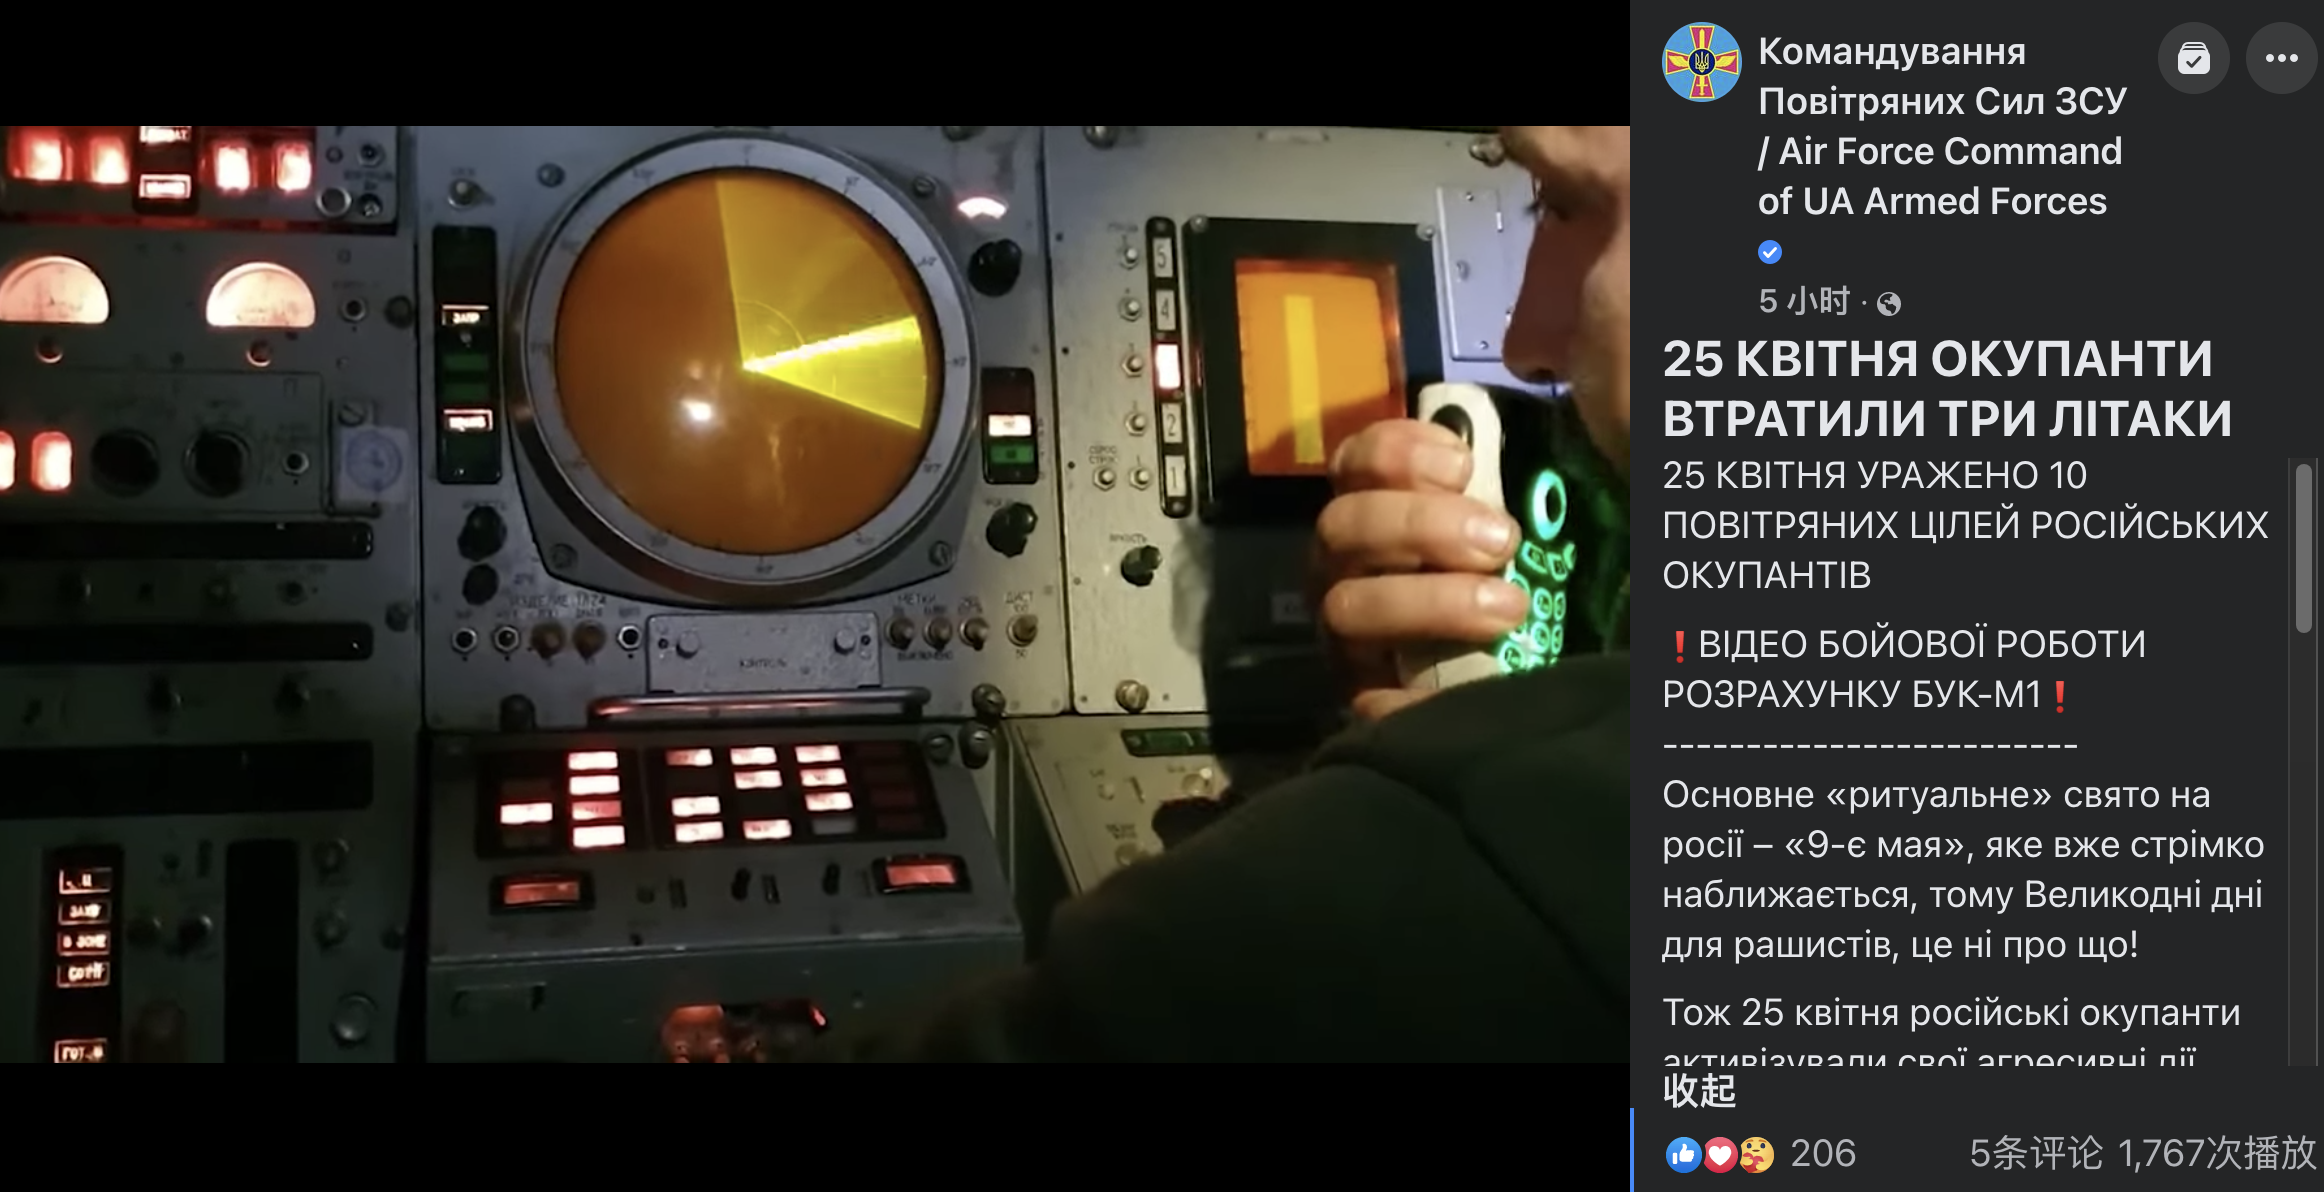 乌空军25日发布战报视频，截图来自战报后“山毛榉-M1”防空系统内部视频部分，乌军战报视频疑似将多个不同时段拍摄的片段组合，包括网传类似苏-34的俄军飞机被击落画面